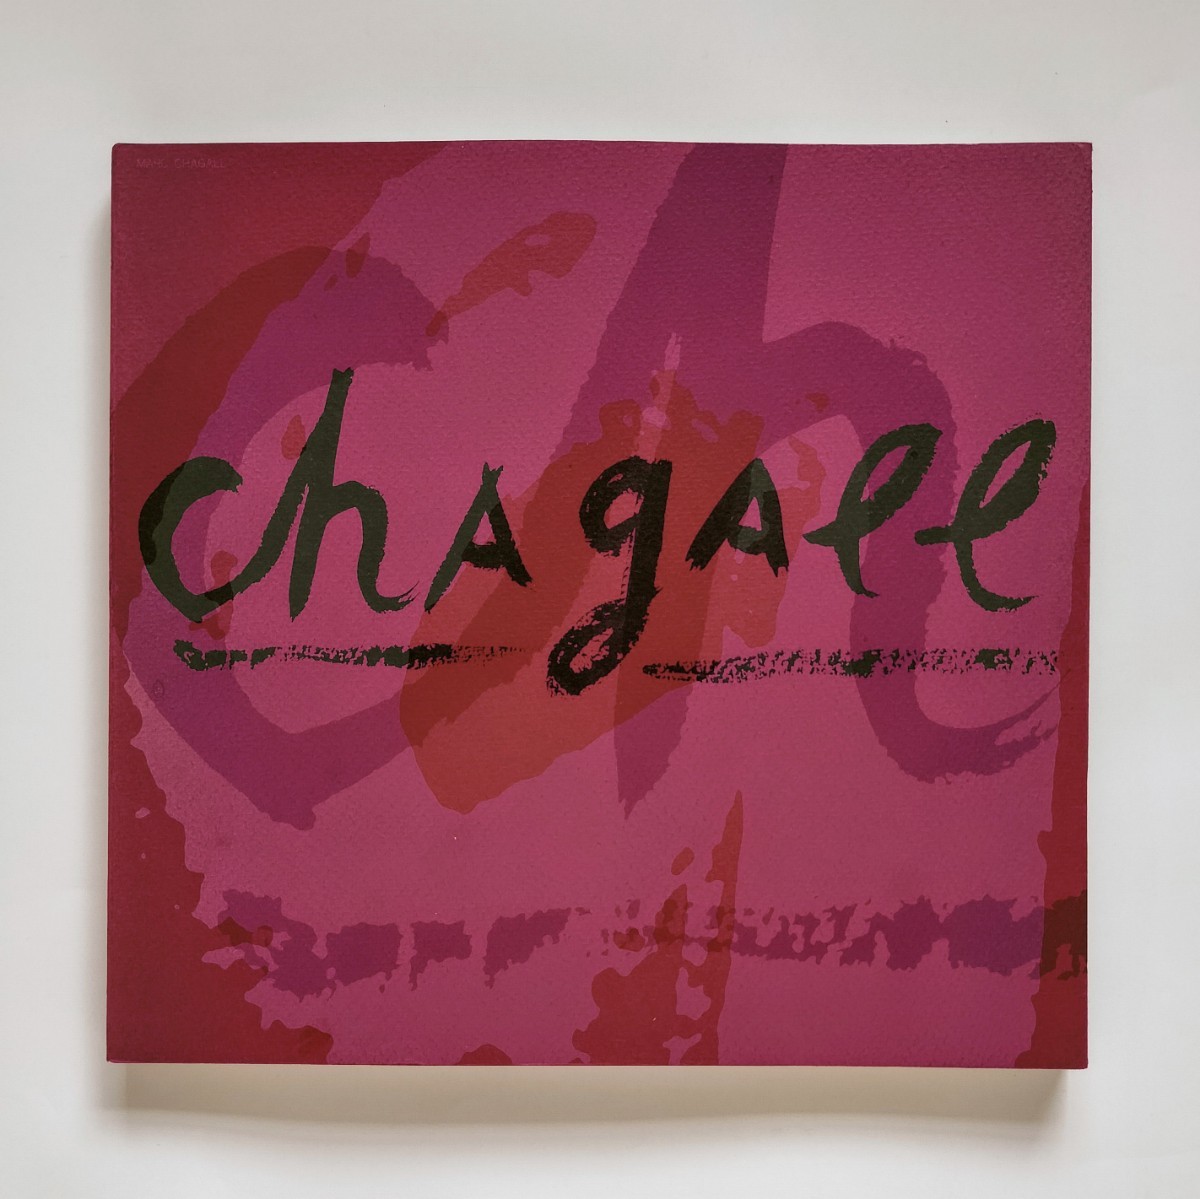 a5..夏加尔展艺术之友协会, 出版于 1963 年, 绘画, 画集, 美术书, 收藏, 目录